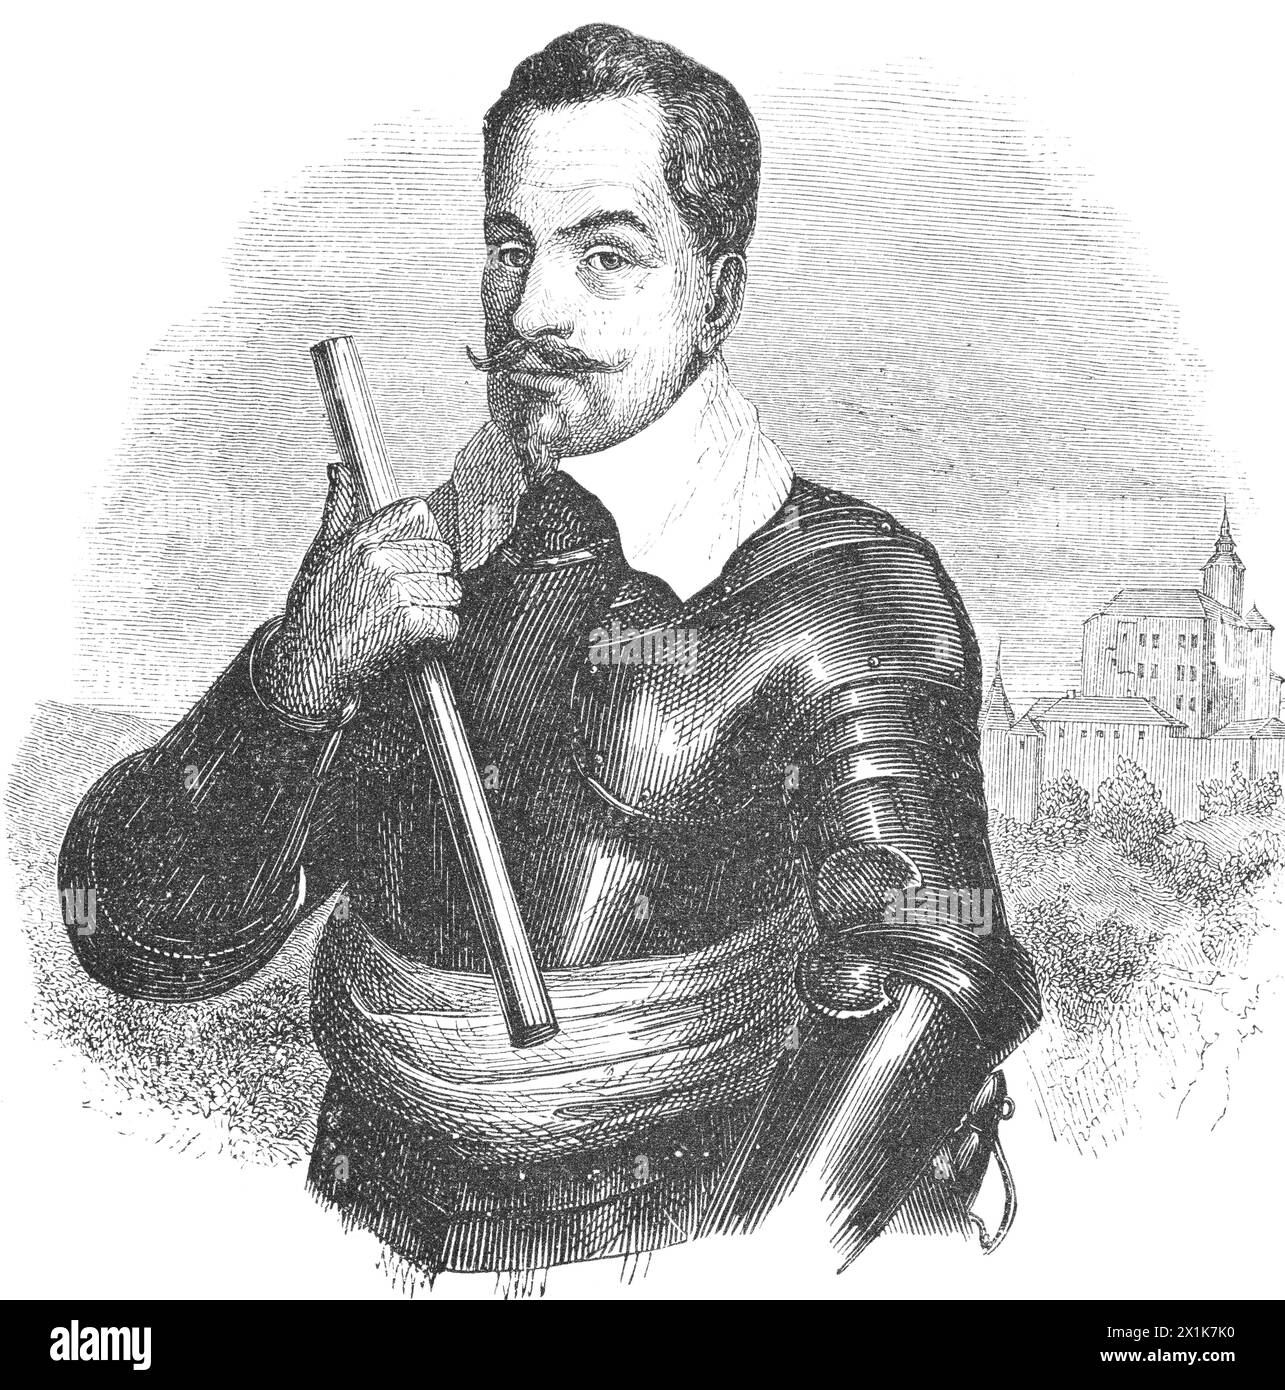 Albrecht von Wallenstein, Militärführer und Staatsmann, kämpfte im Dreißigjährigen Krieg auf katholischer Seite, historisches Bild 1880 Stockfoto